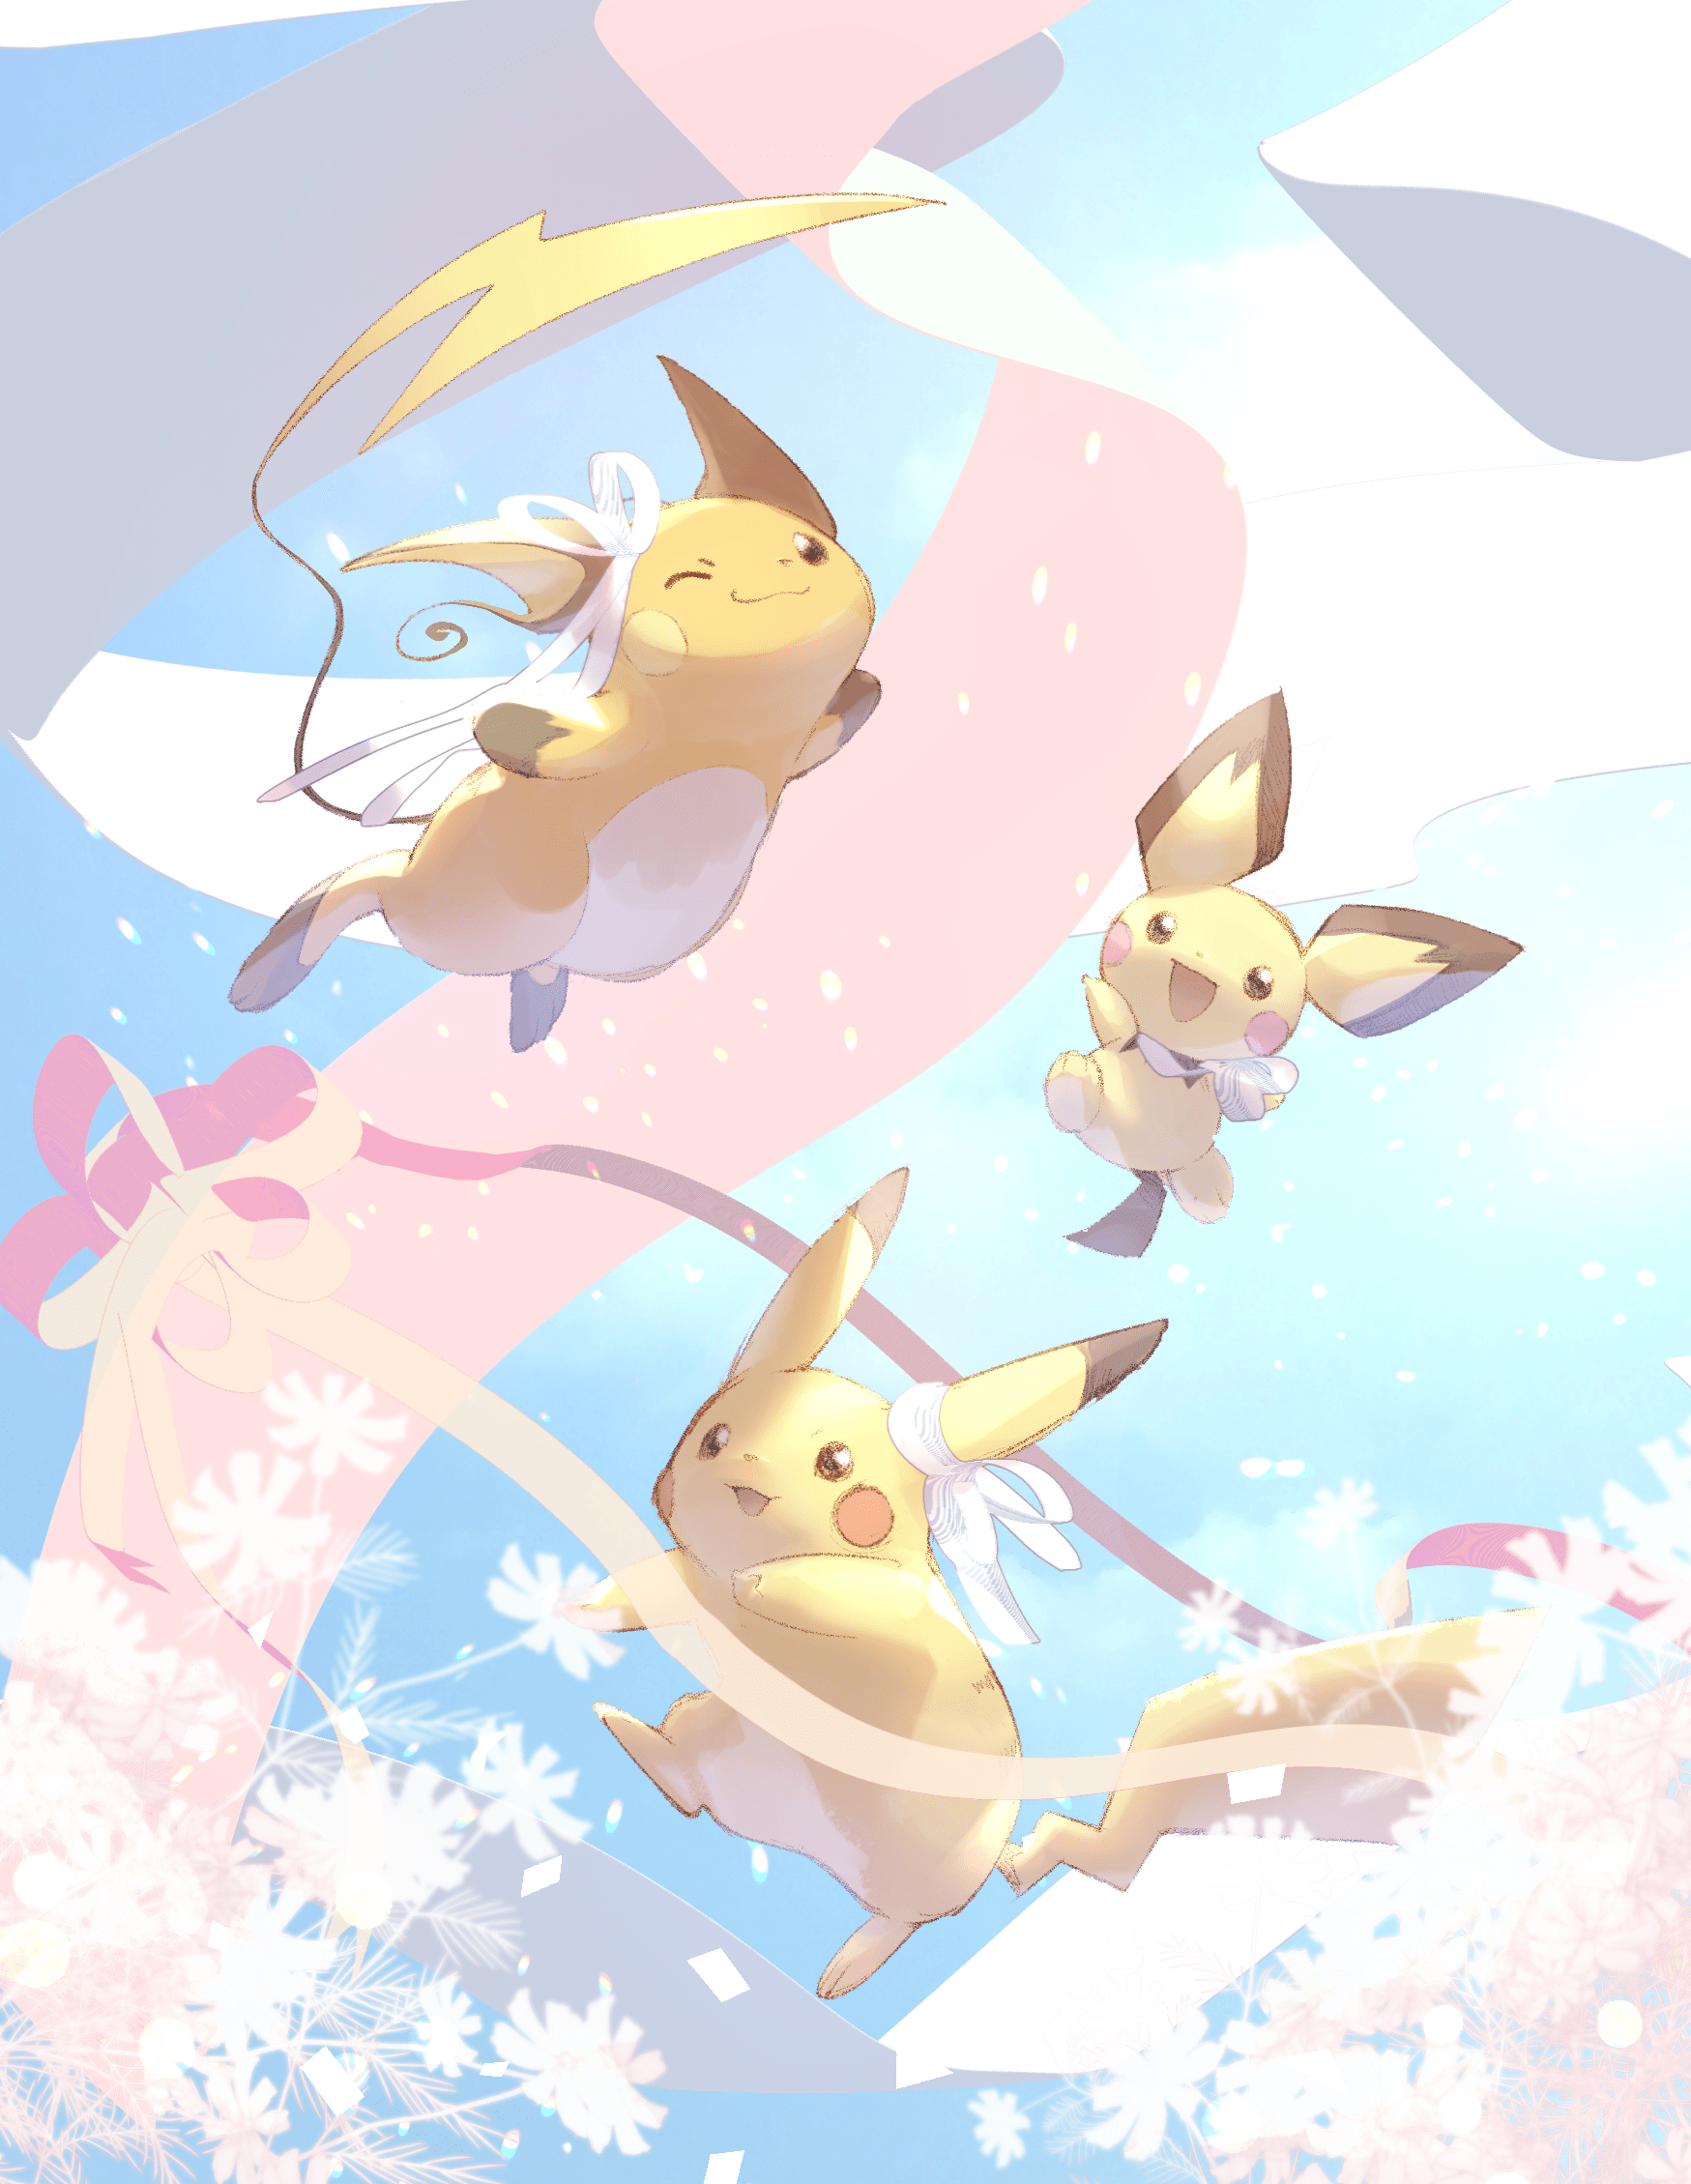 pikachu, pichu, and raichu (pokemon) drawn